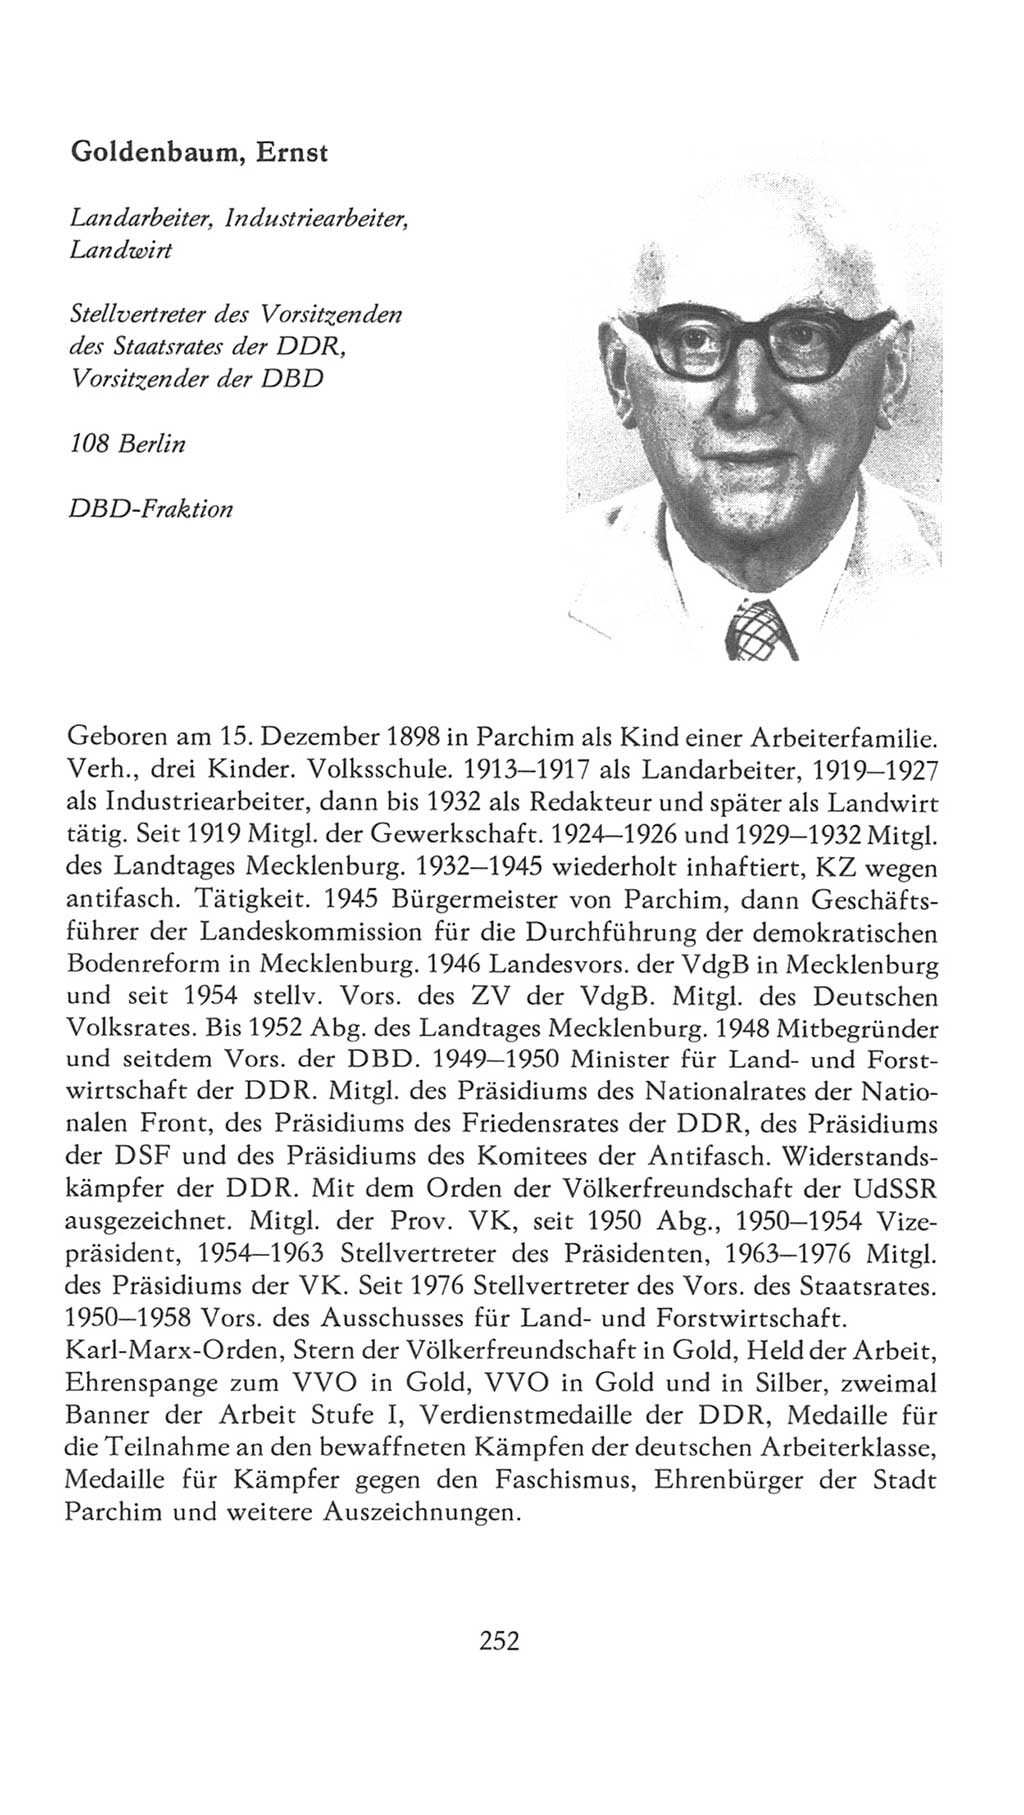 Volkskammer (VK) der Deutschen Demokratischen Republik (DDR), 7. Wahlperiode 1976-1981, Seite 252 (VK. DDR 7. WP. 1976-1981, S. 252)